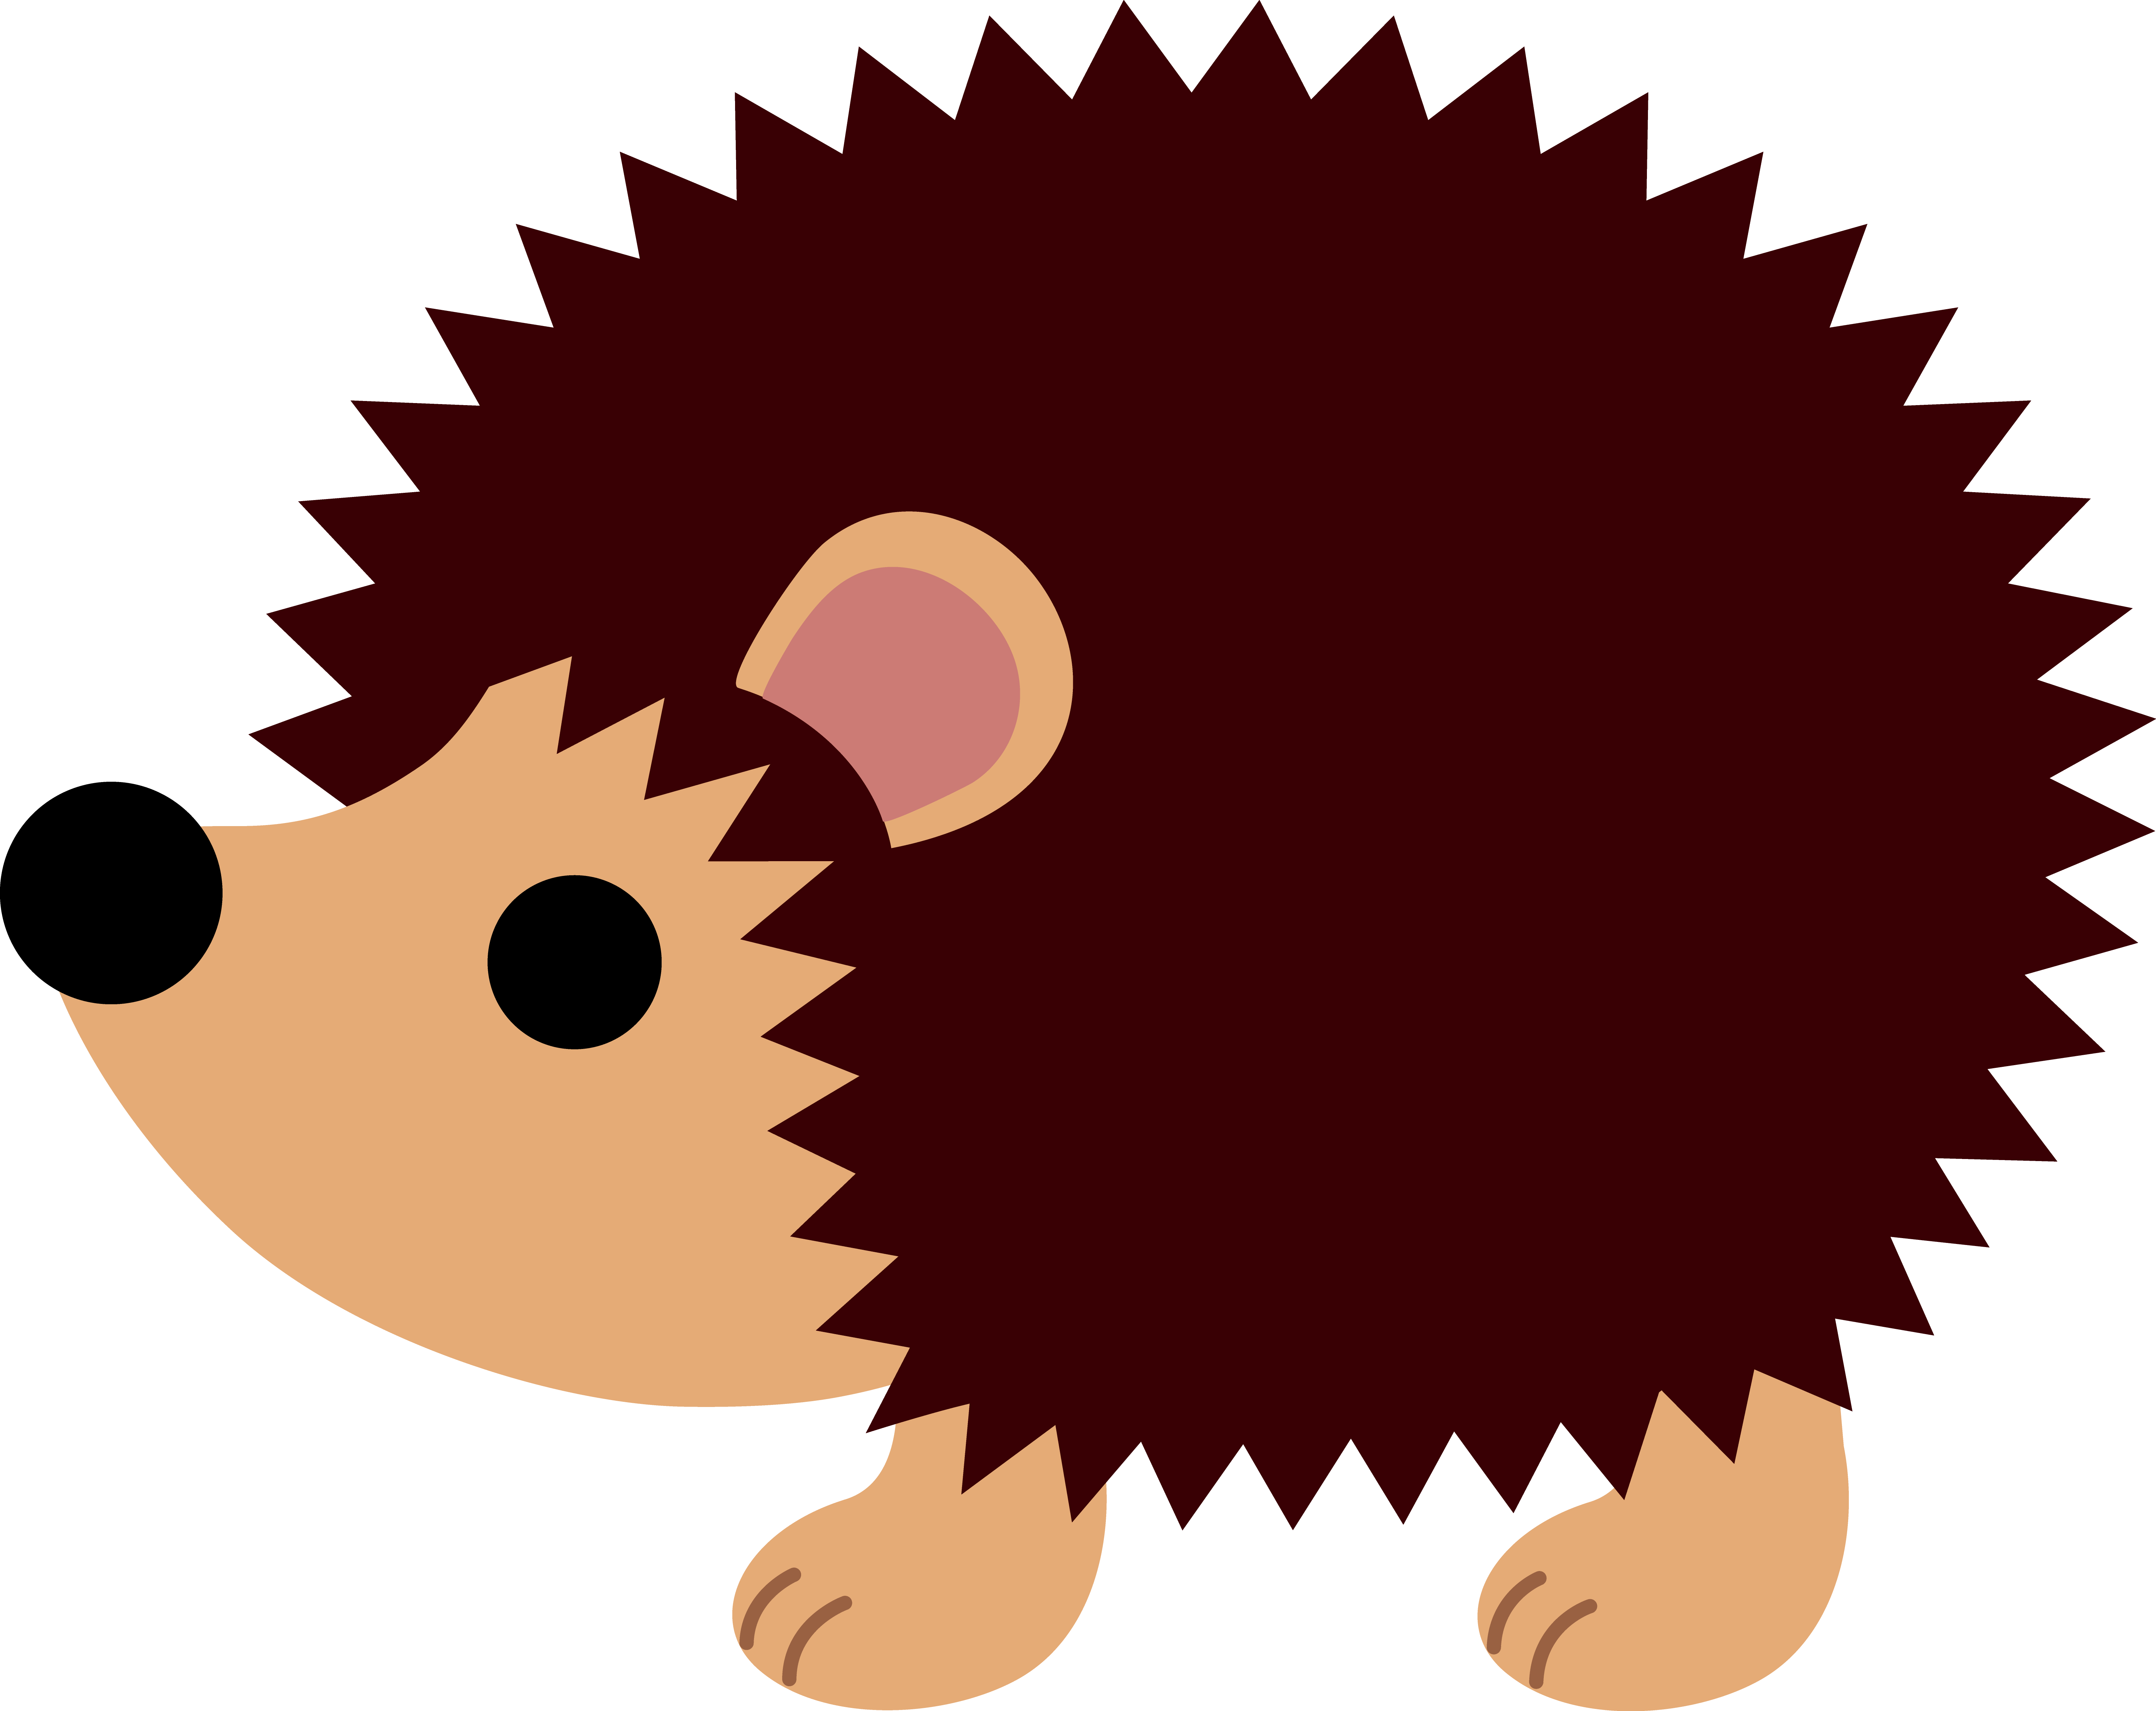 Hedgehog Concept Template